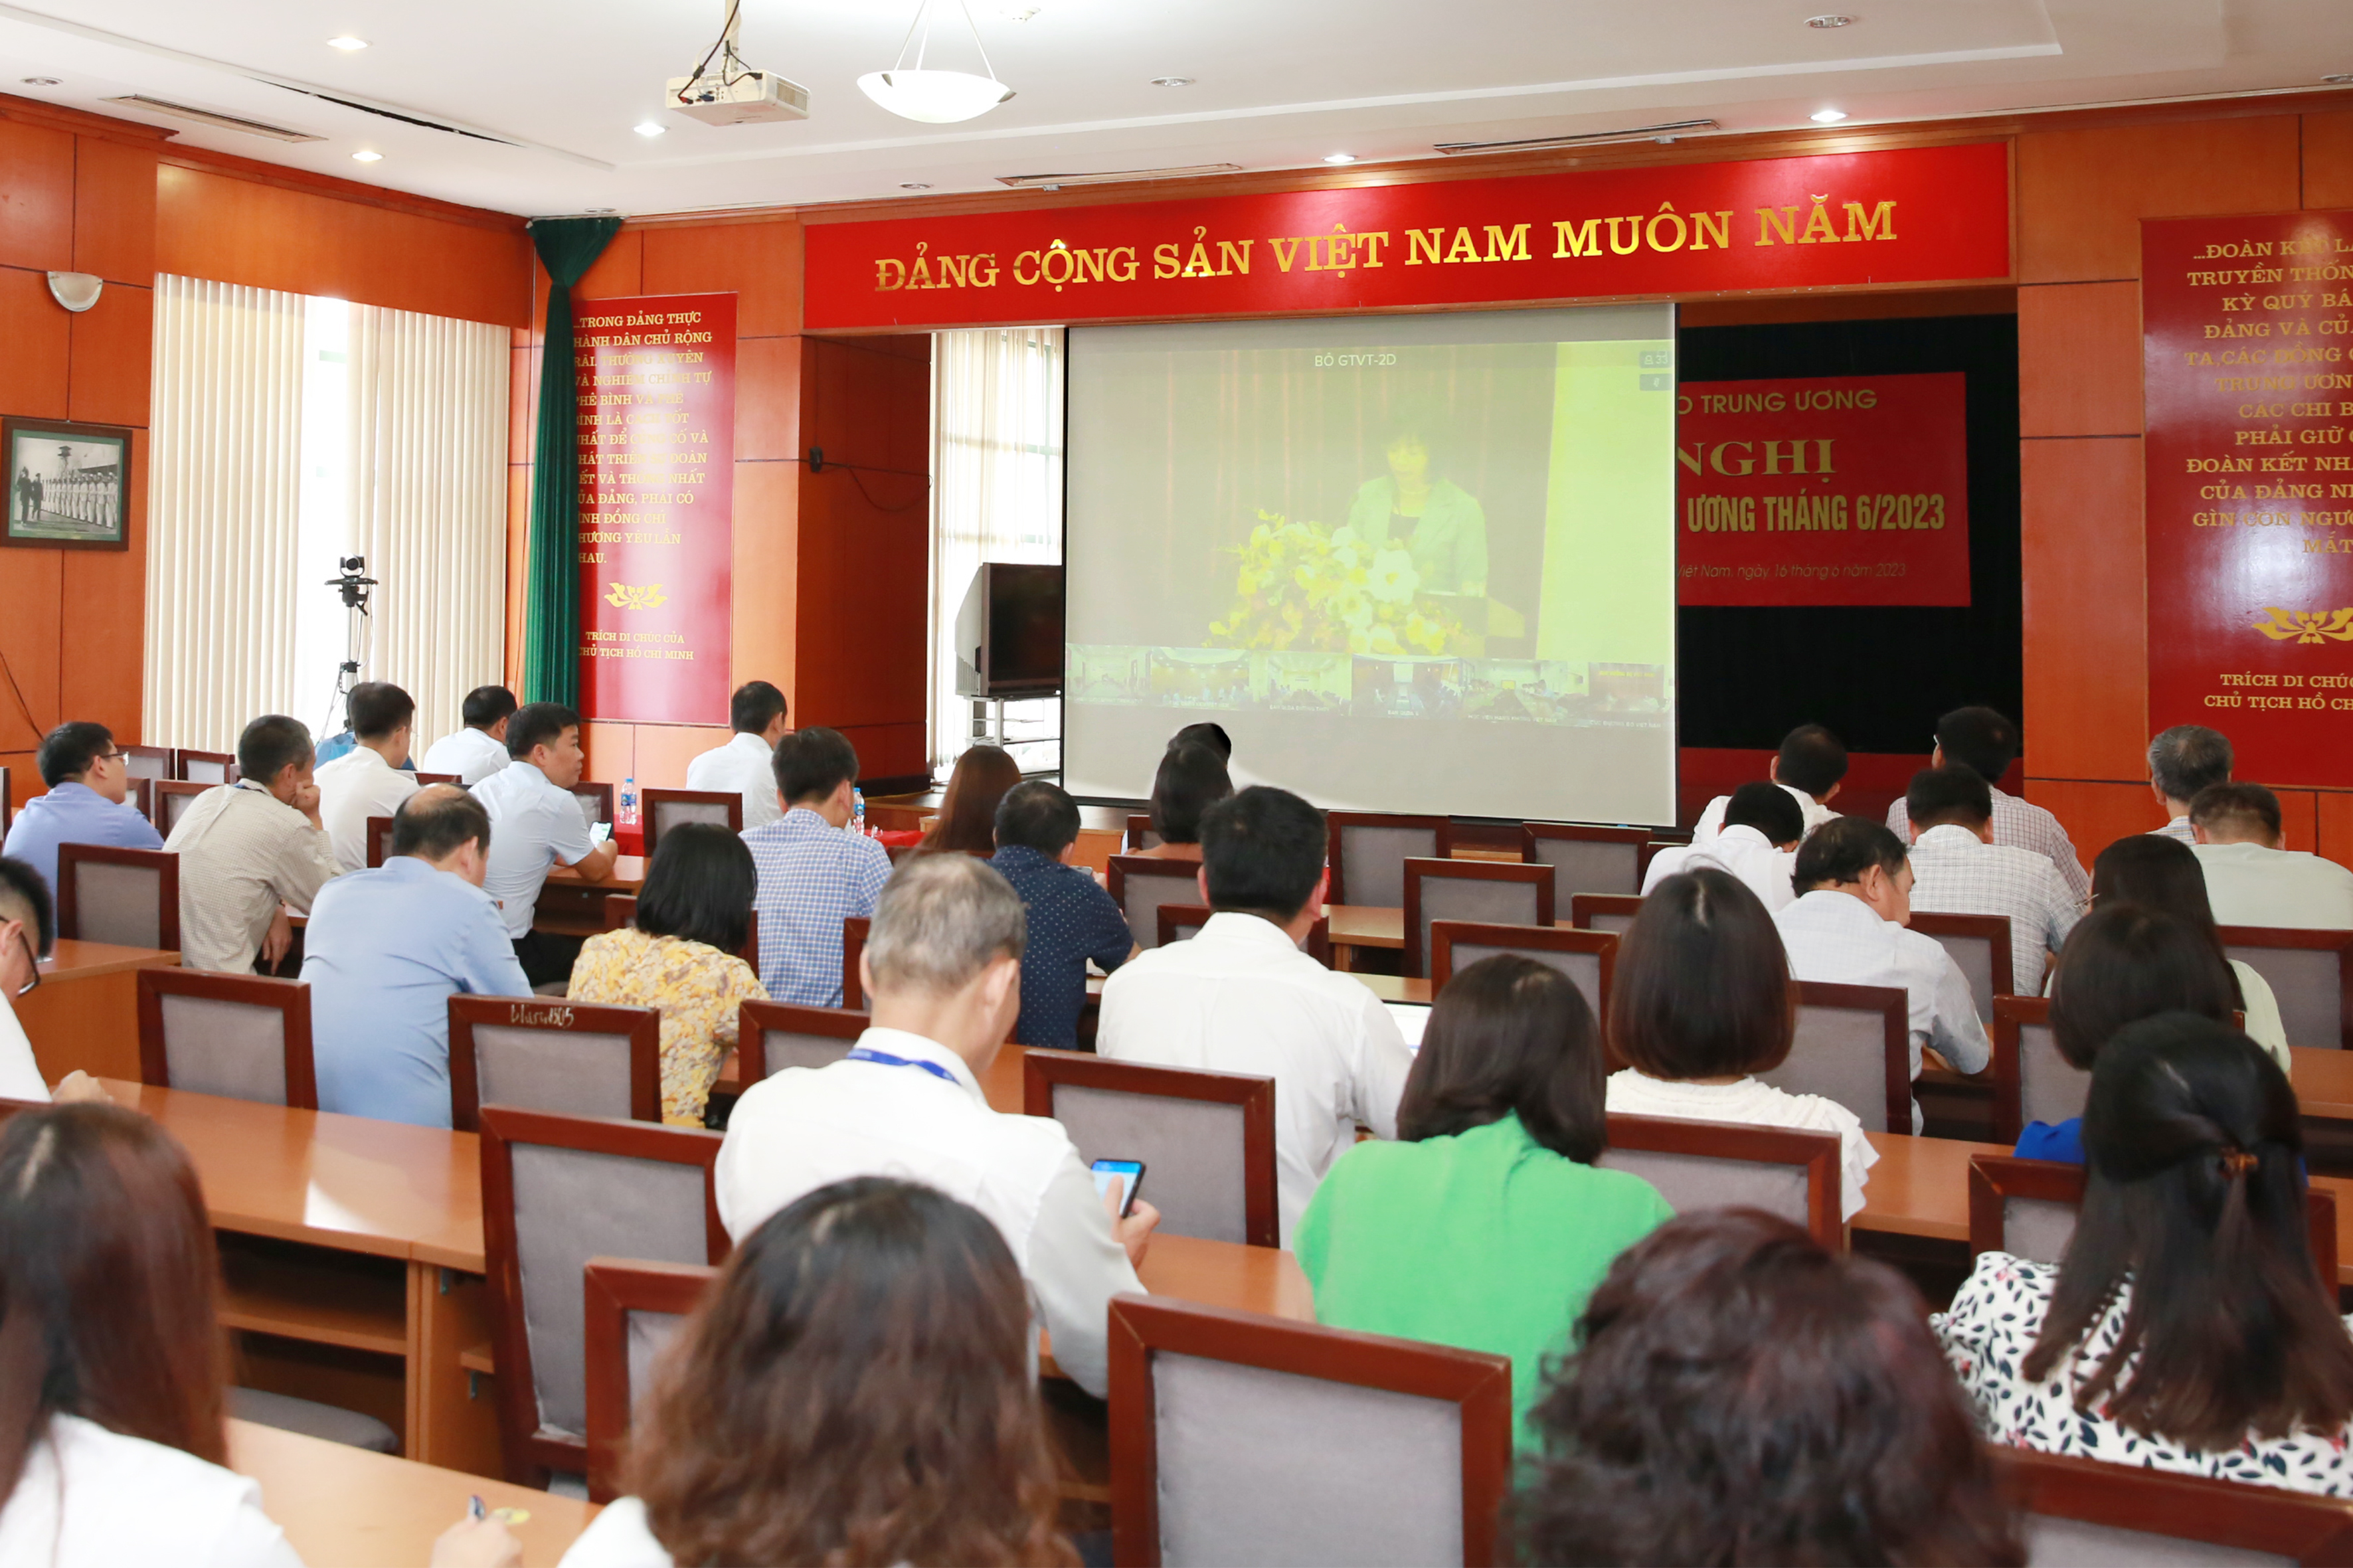 Đảng bộ VATM: Tham dự Hội nghị Báo cáo viên Trung ương tháng 6/2023